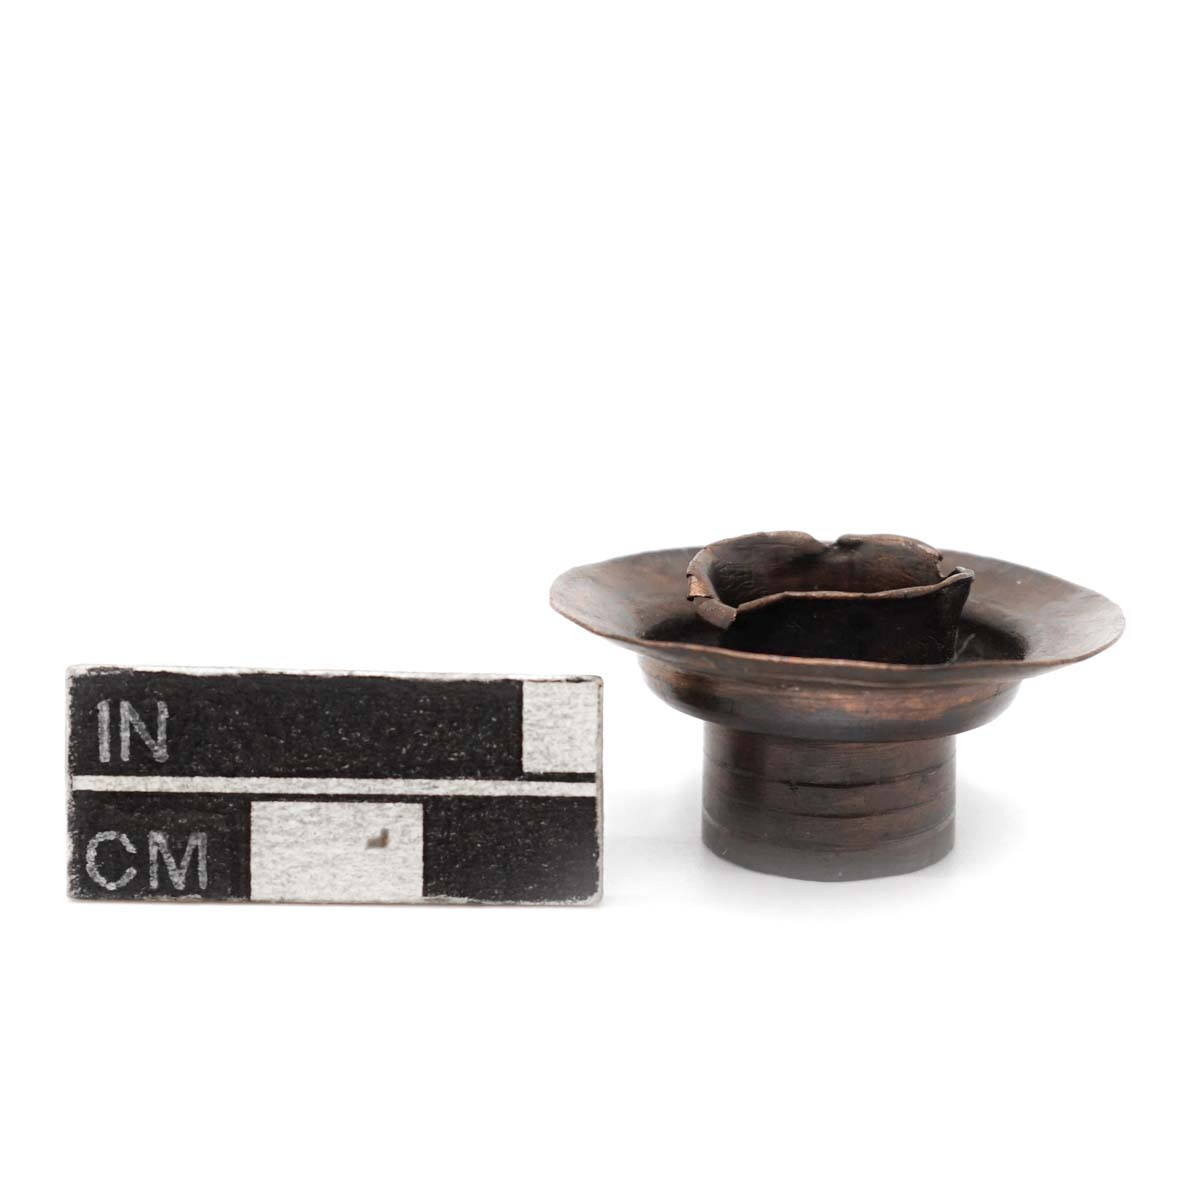 Opium pipe bowl connector, metal.